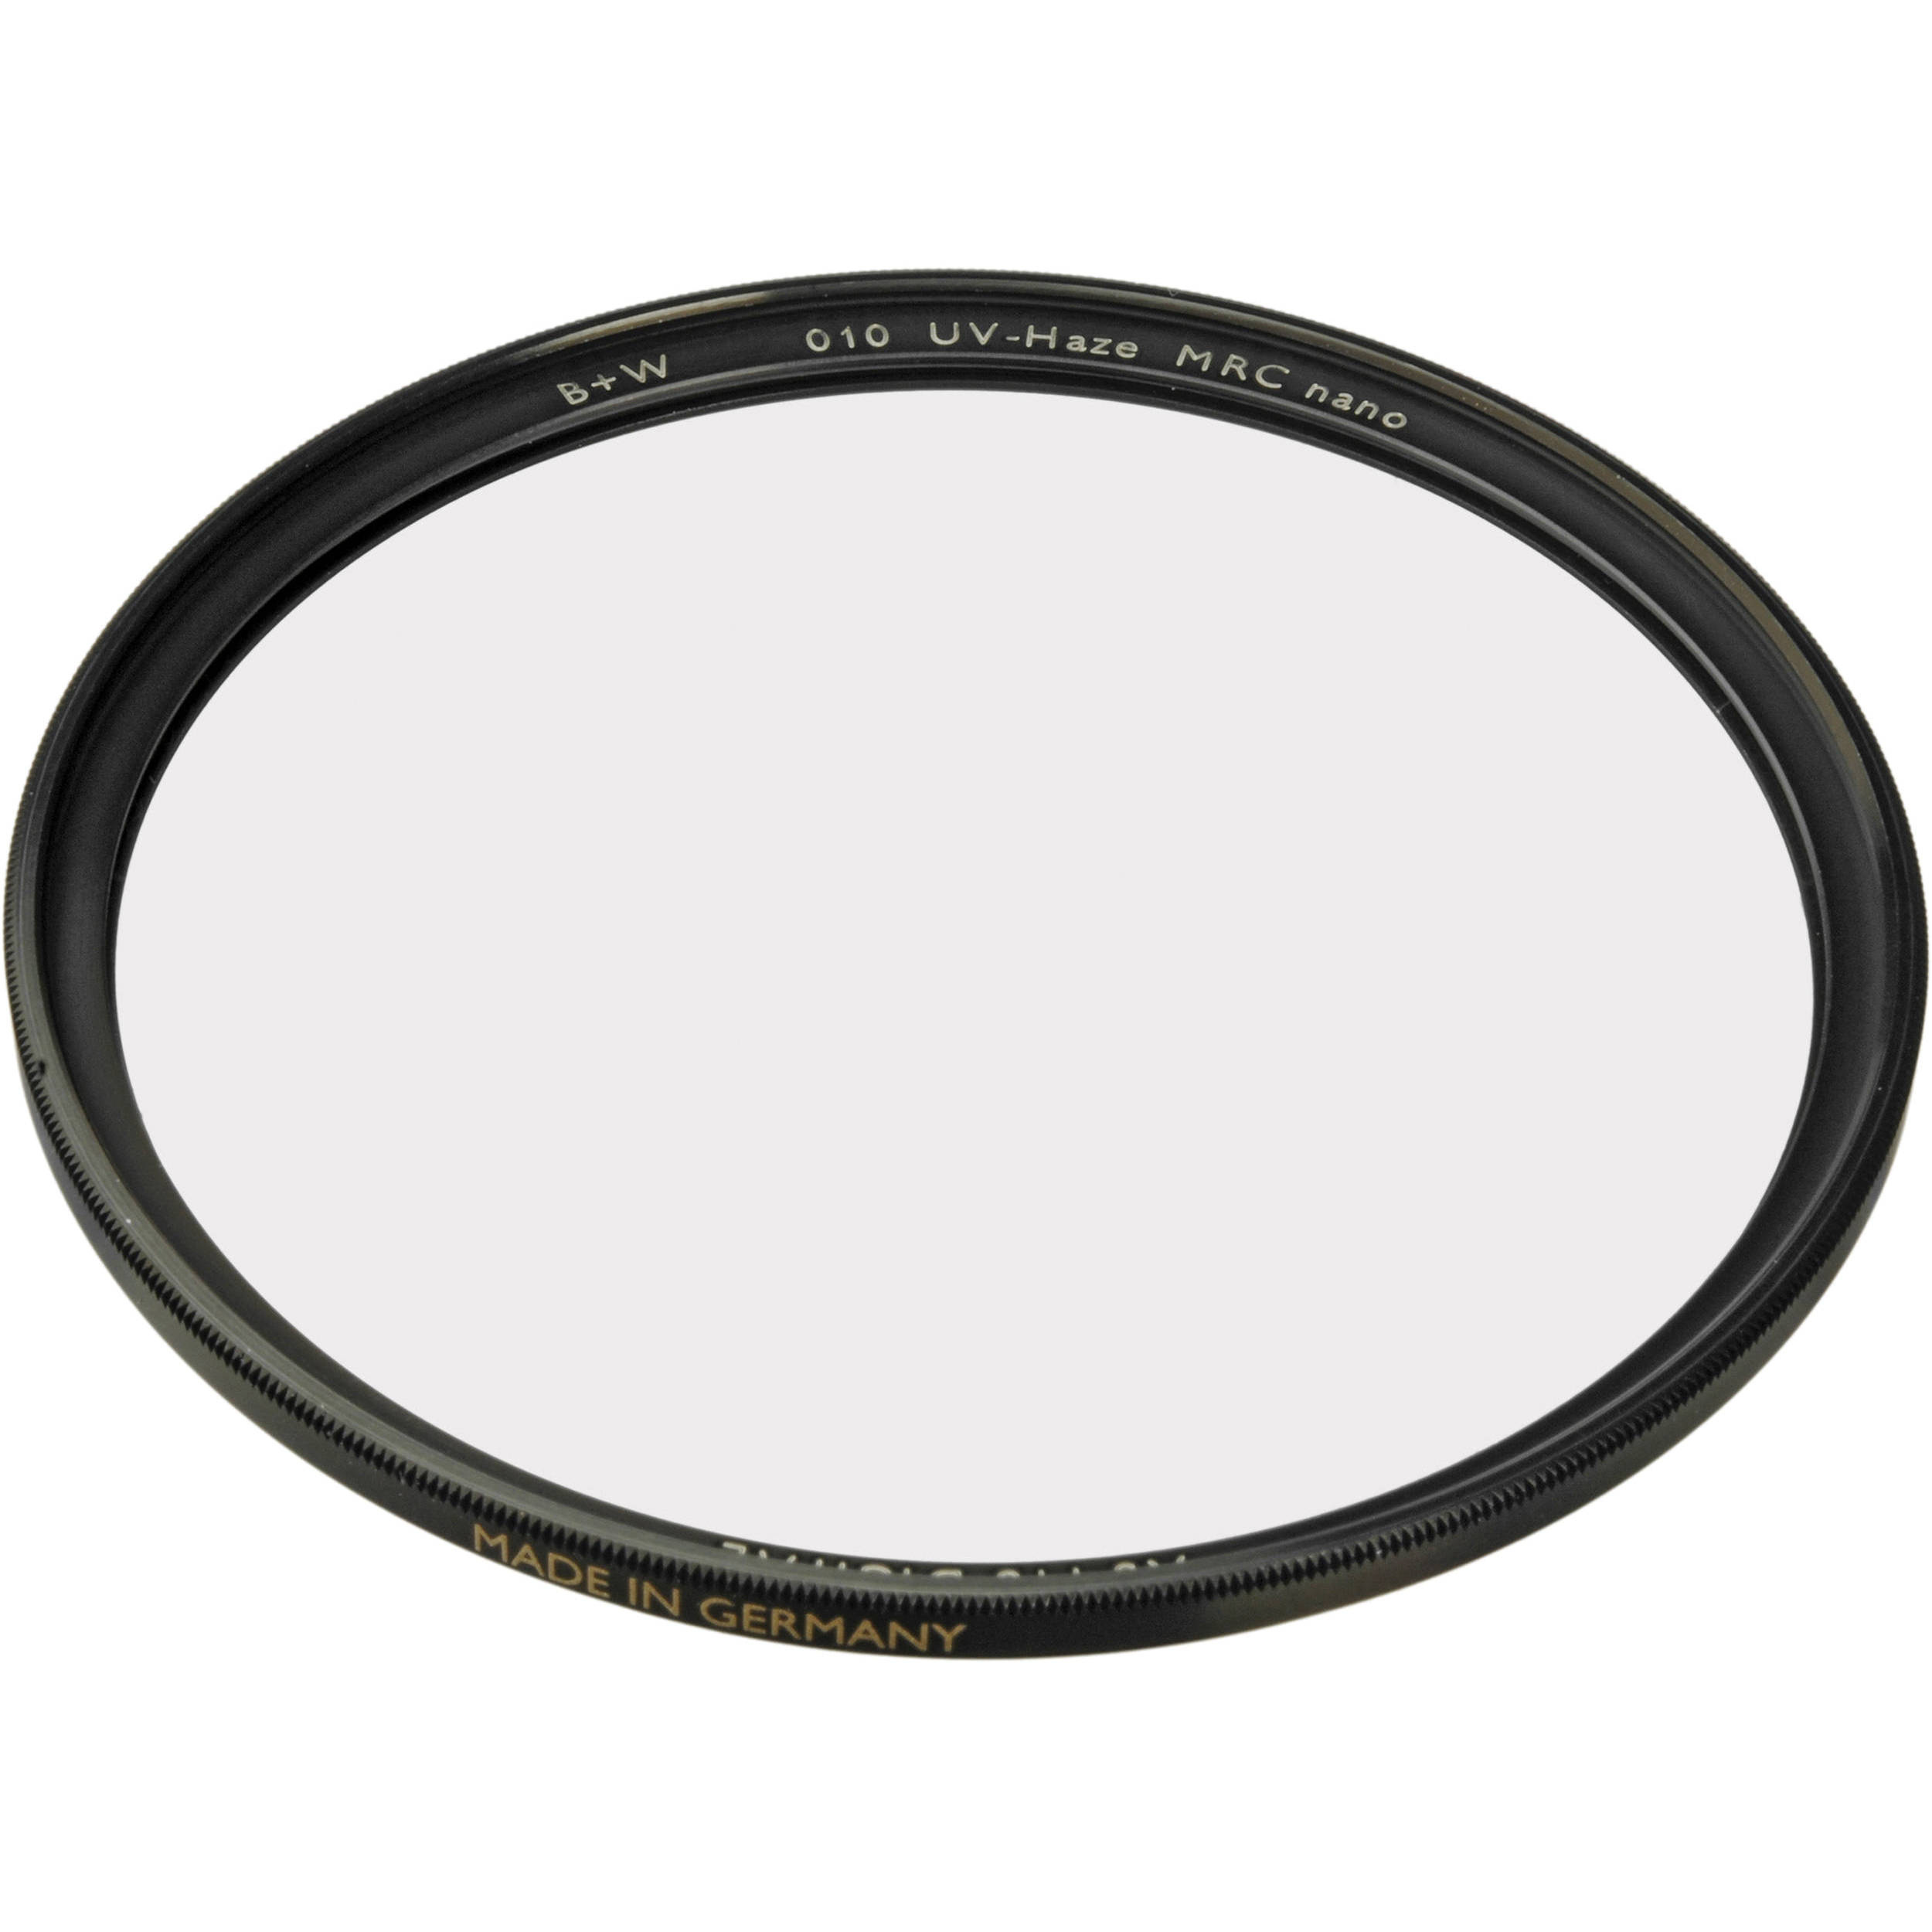 B+W 40.5mm XS-Pro UV MRC-Nano 010M Filter